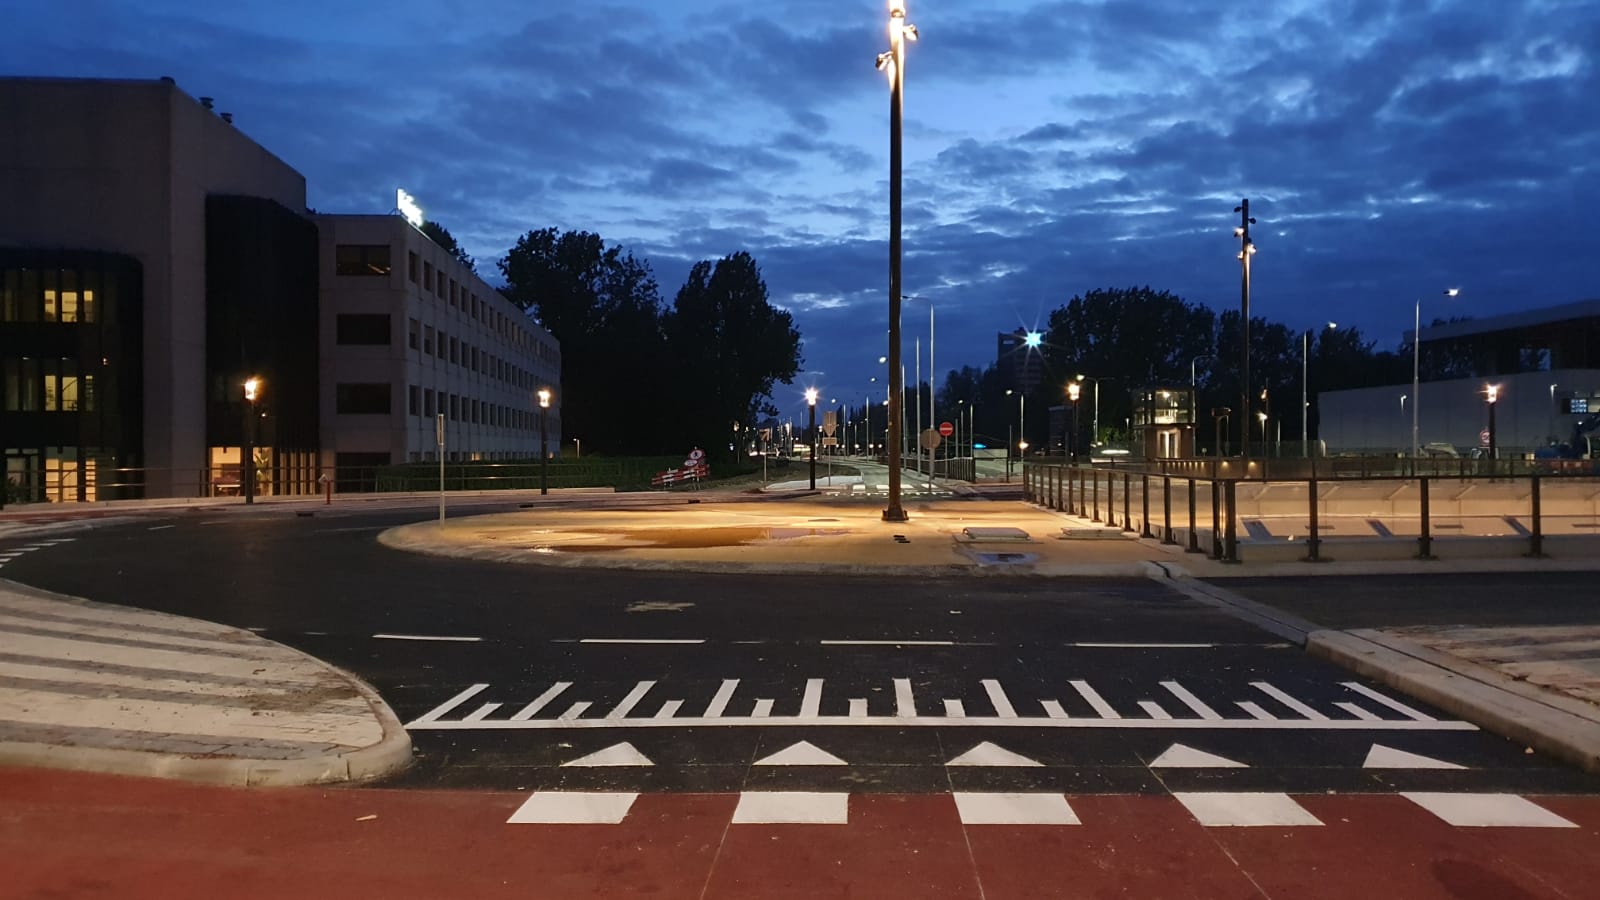 Kruispunt Zonnestein is weer open voor al het verkeer. De fietspaden langs de Beneluxbaan moeten nog wel hersteld worden. Dat gebeurt de komende weken.